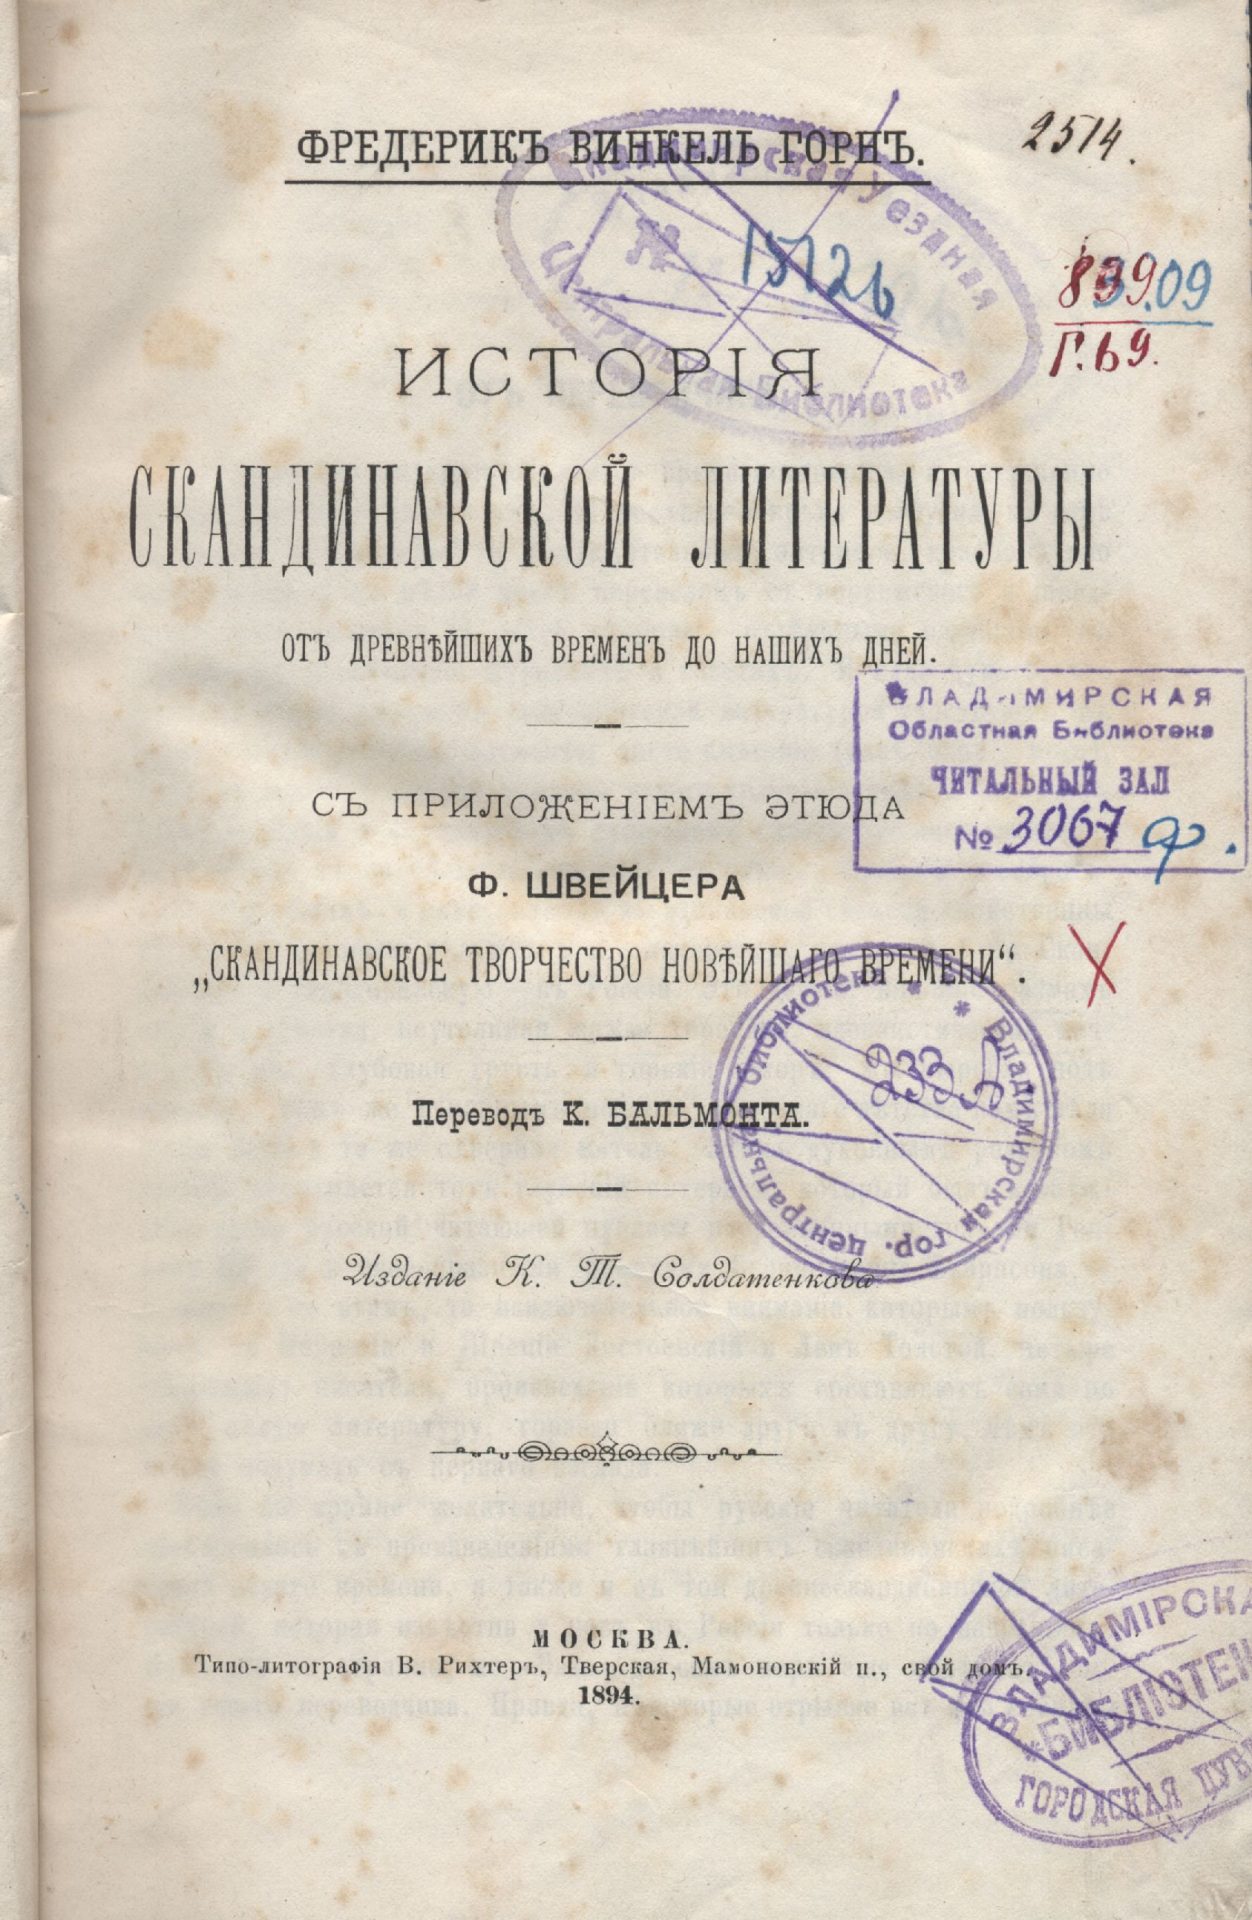 Титульный лист книги "История скандинавской литературы" в переводе Бальмонта, 1894 года издания